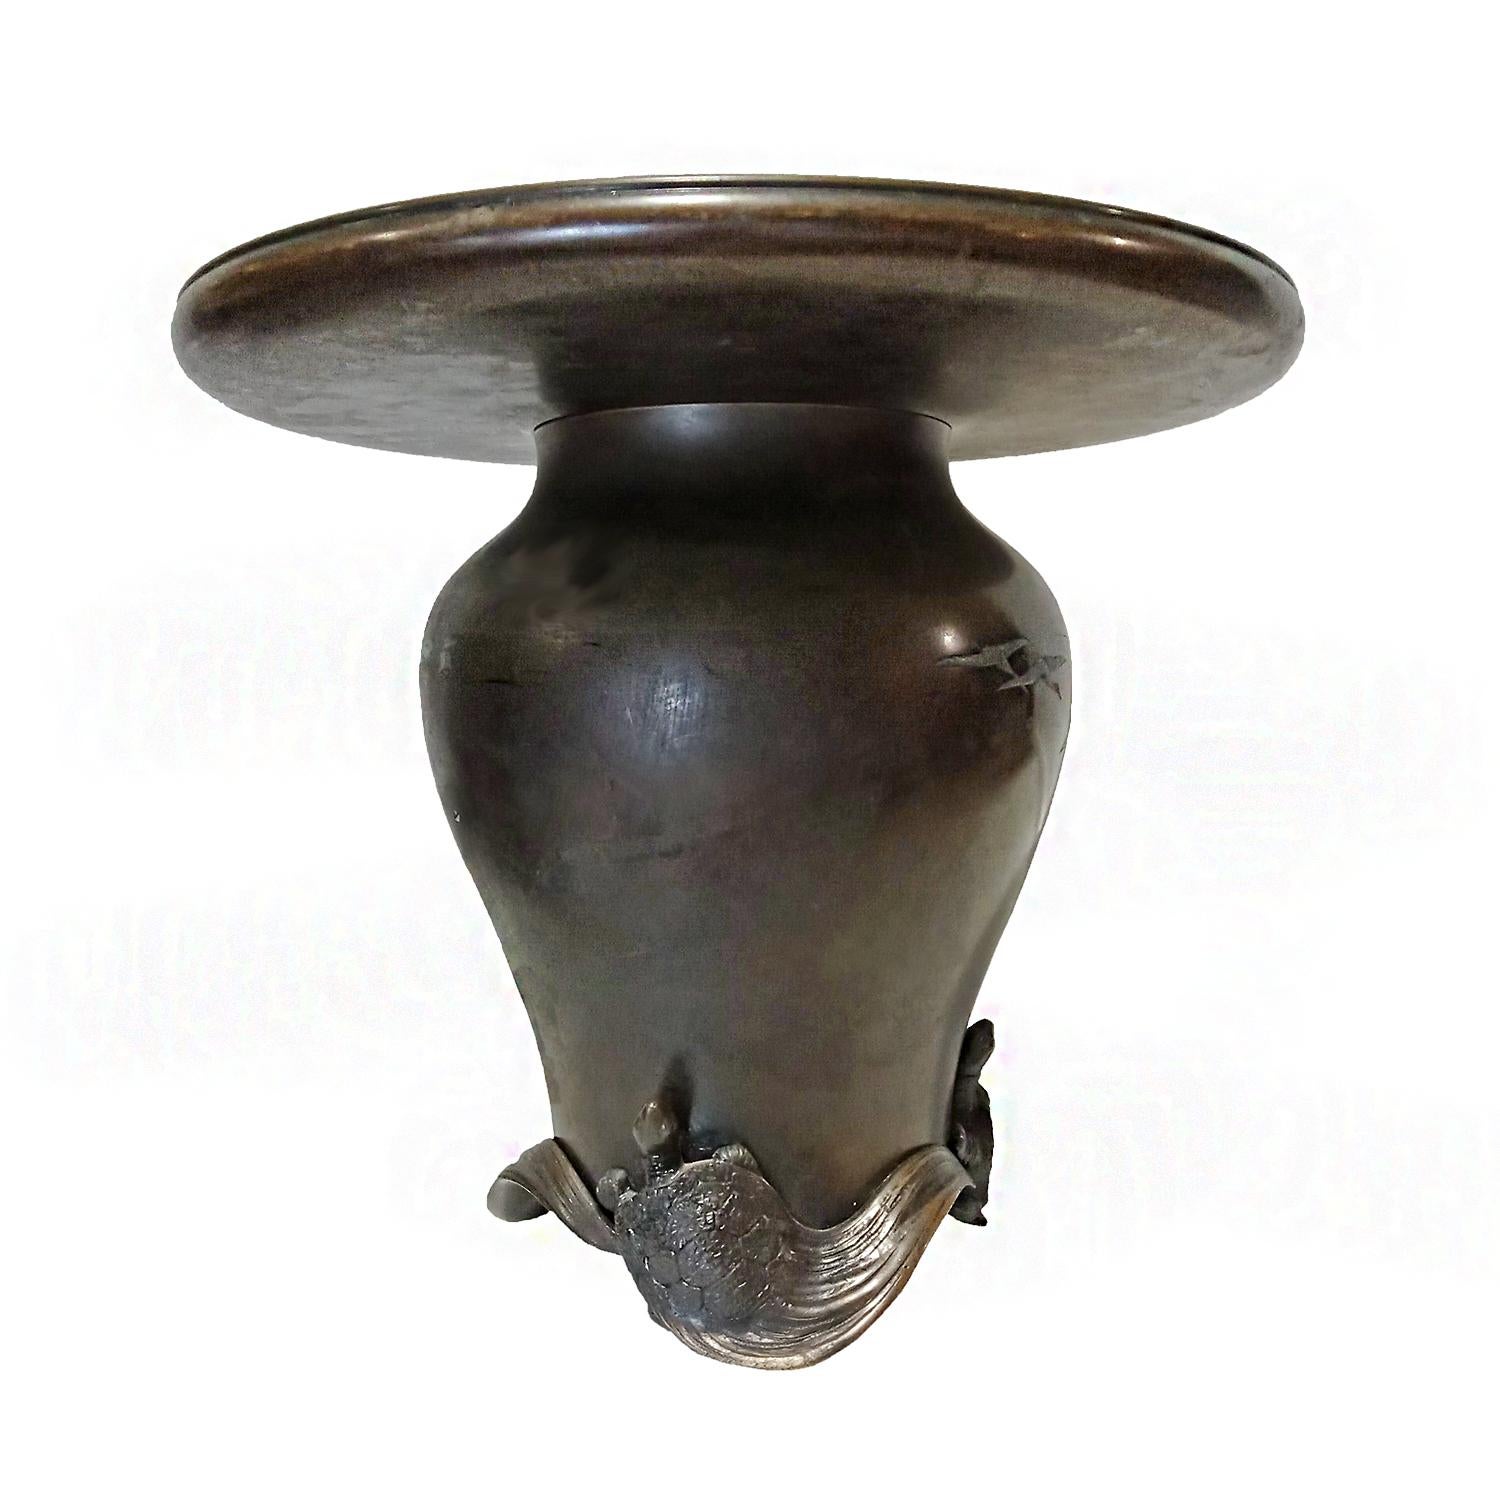 Un vase japonais unique, fabriqué à la main en bronze. Période Meiji, vers 1890. Décoré de grues en relief et d'un symbole solaire doré. Au fond, le vase est niché dans une base délicatement sculptée de trois tortues qui, selon les croyances